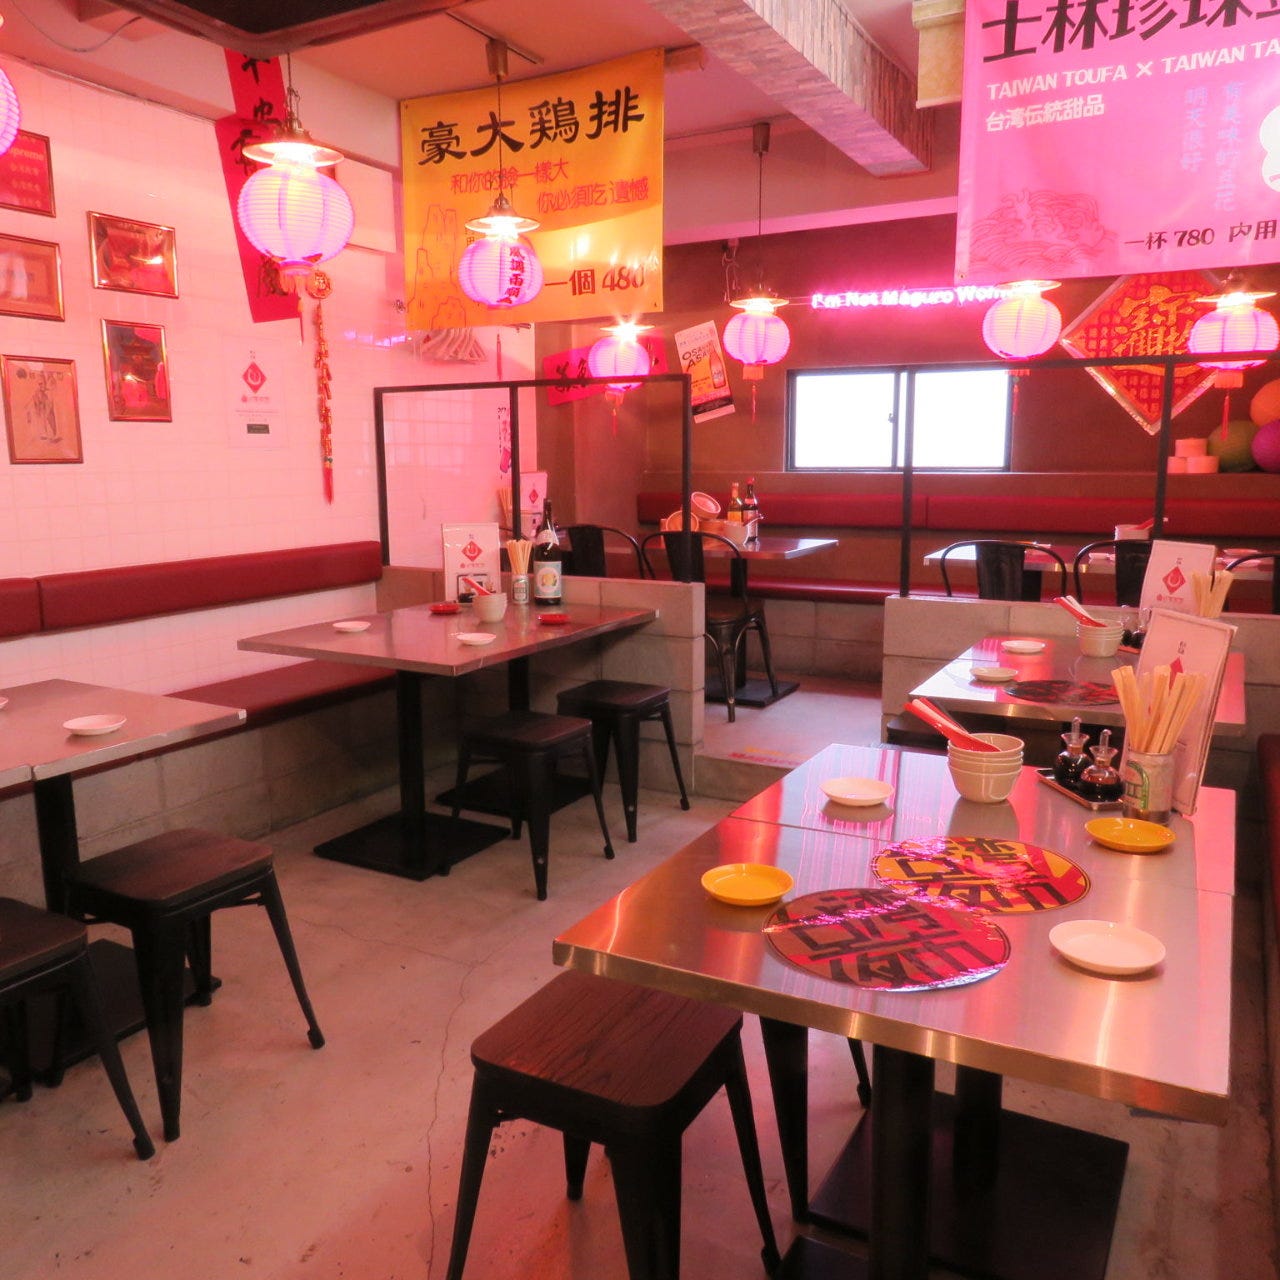 台湾の食堂のような雰囲気の「台湾まるごと食べ放題 台湾夜市 梅田店」の店内